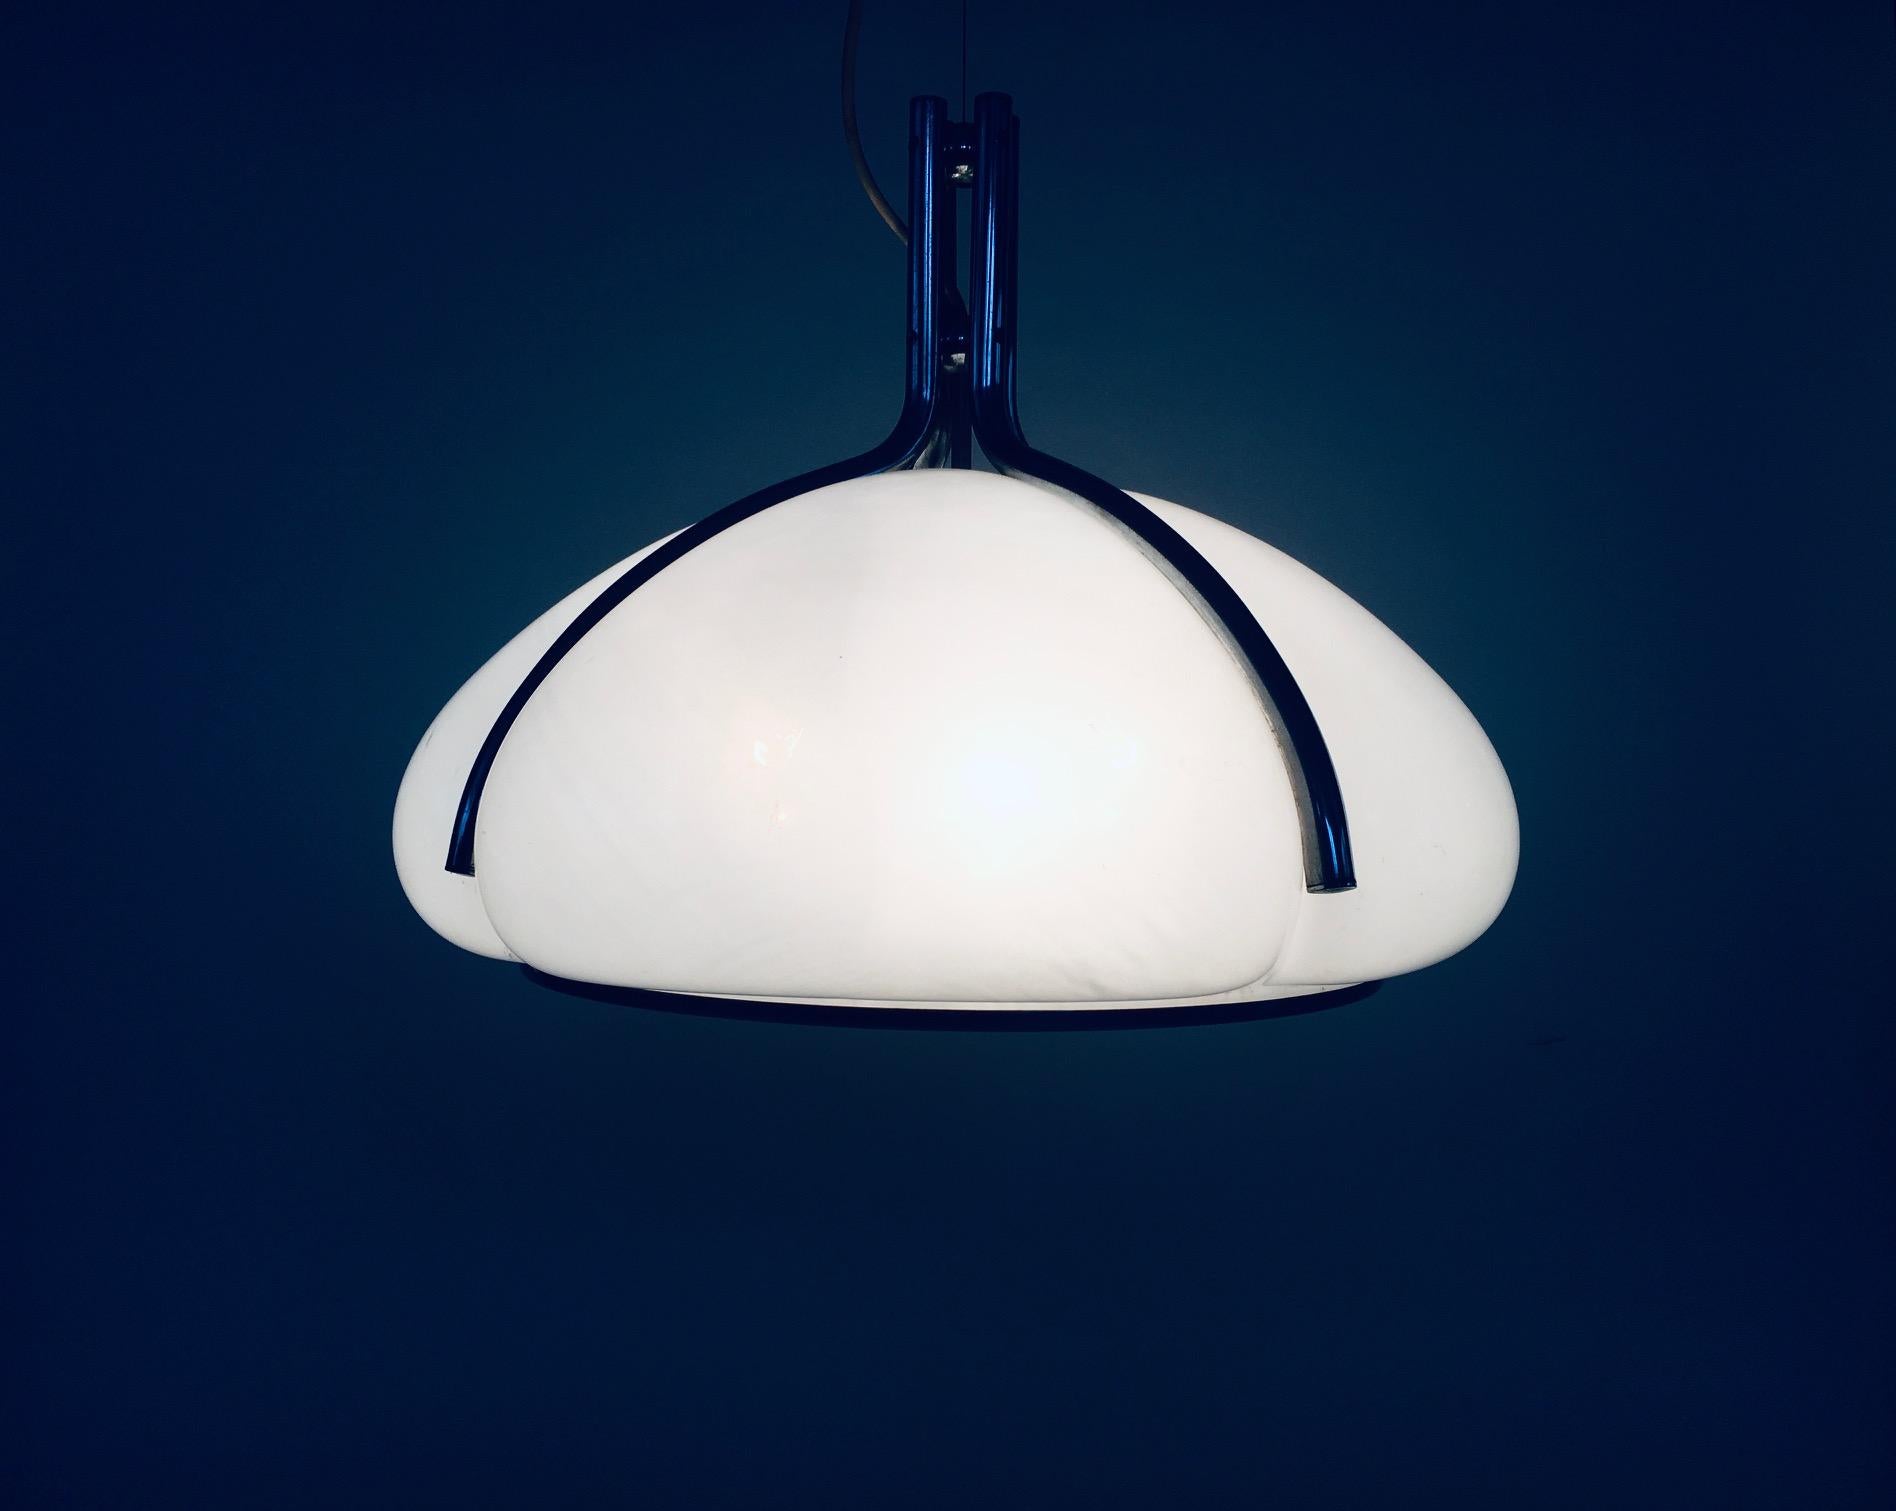 Quadrifoglio Pendant Lamp by Gae Aulenti for Guzzini, Italy 1970's For Sale 4